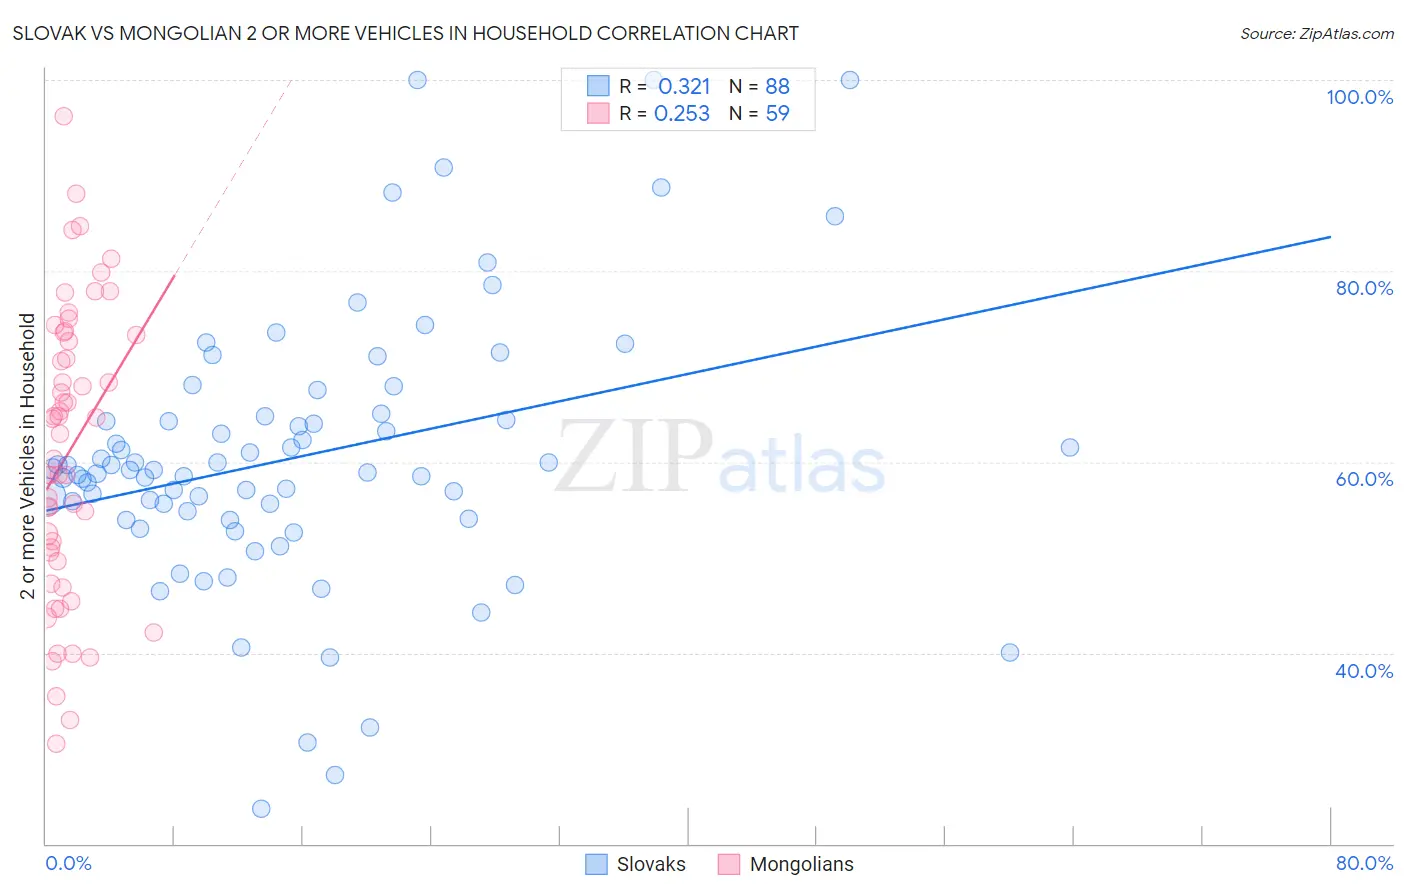 Slovak vs Mongolian 2 or more Vehicles in Household